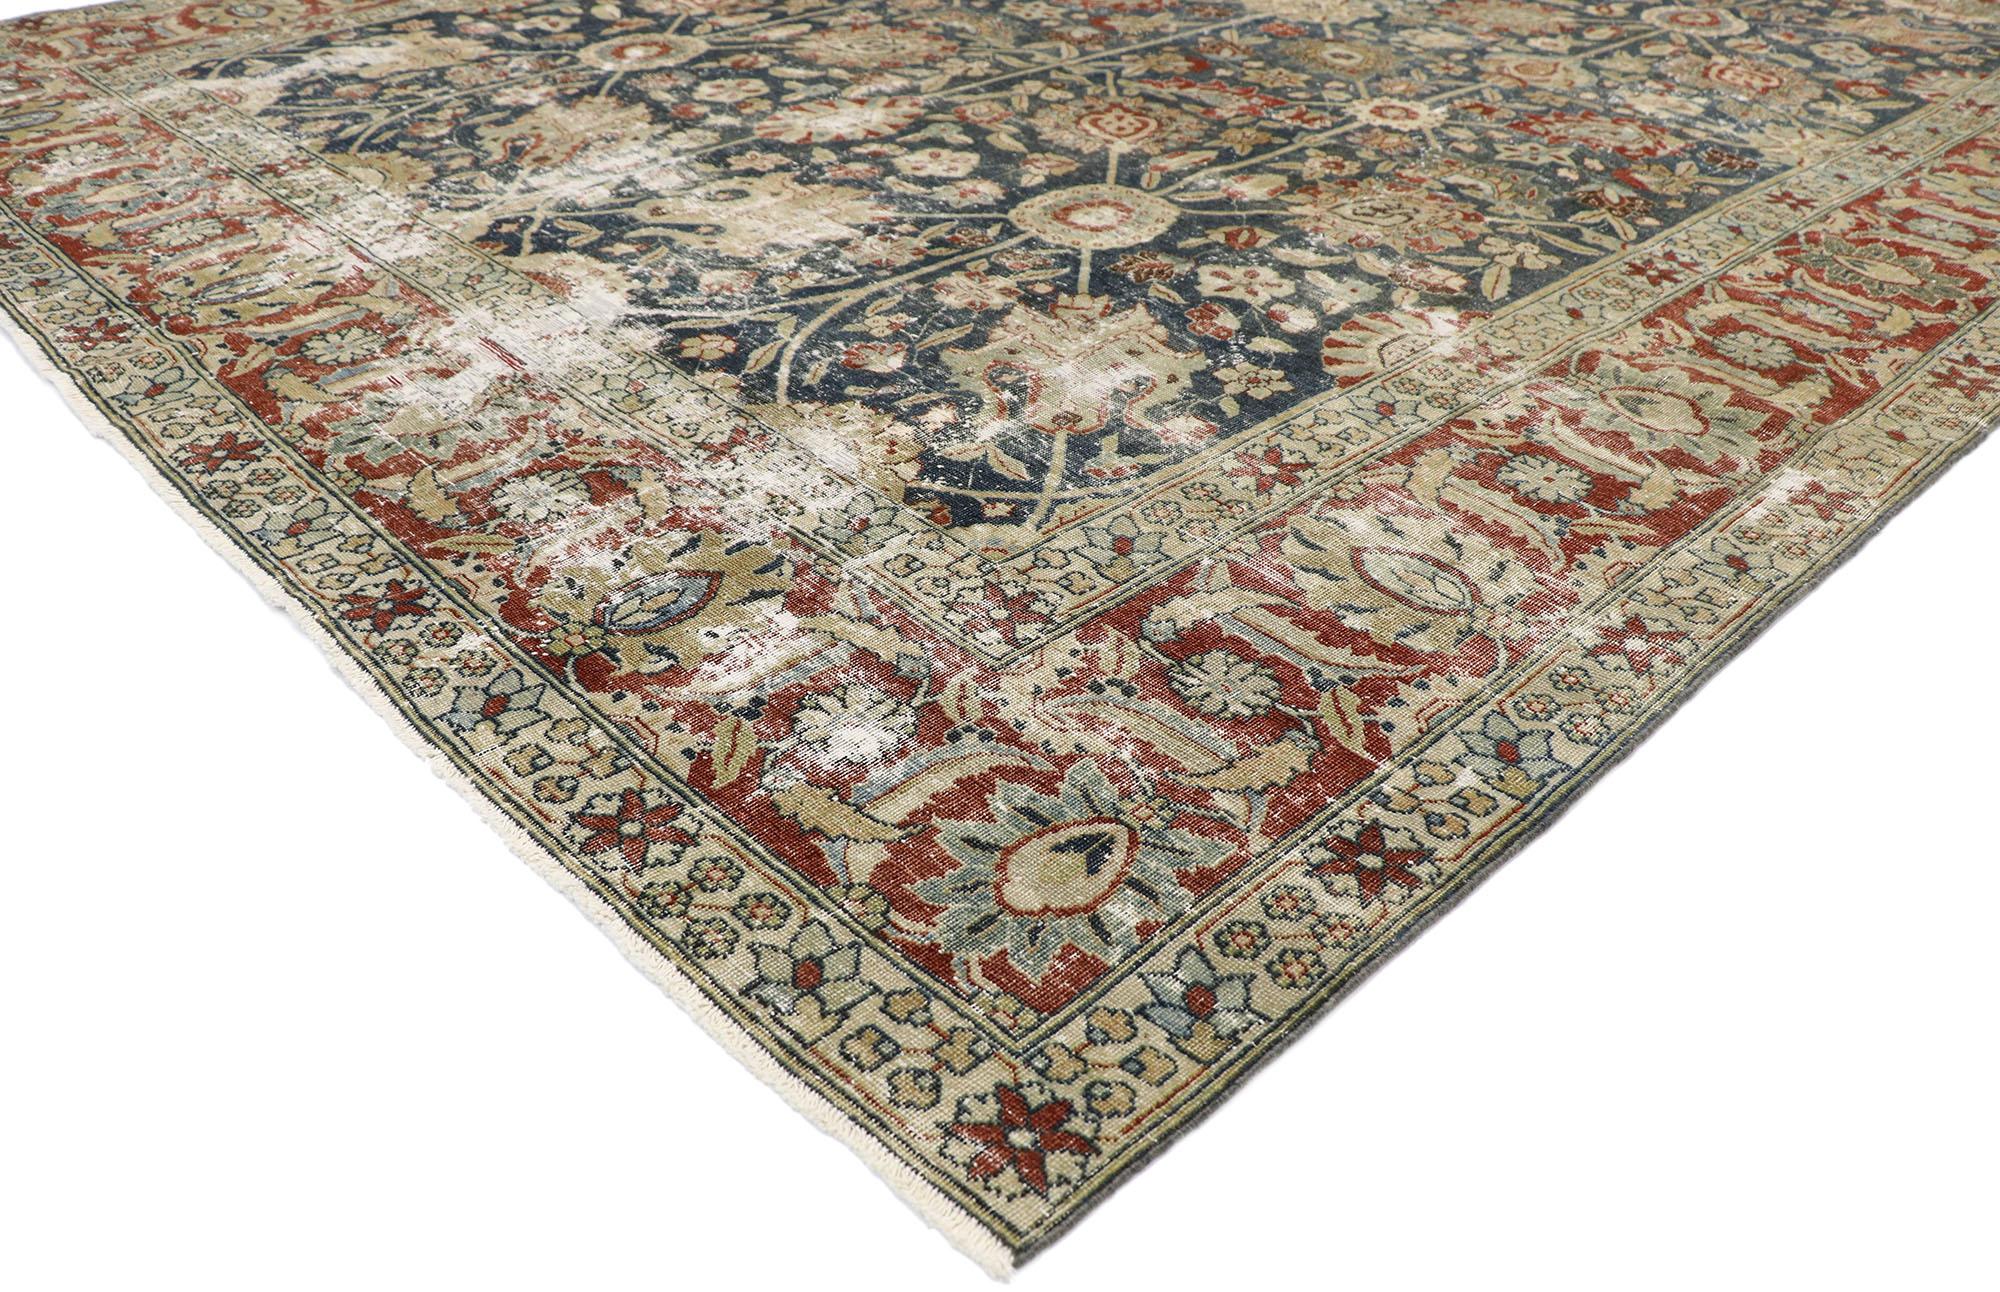 60842, gealterter antiker persischer Täbris-Teppich mit rustikalem englischen Stil 08'10 x 11'03. Dieser handgeknüpfte, antike persische Täbriz-Teppich aus Wolle, der in seiner Wirkung beeinträchtigt ist, ist klug komponiert und ausgewogen. Er hat